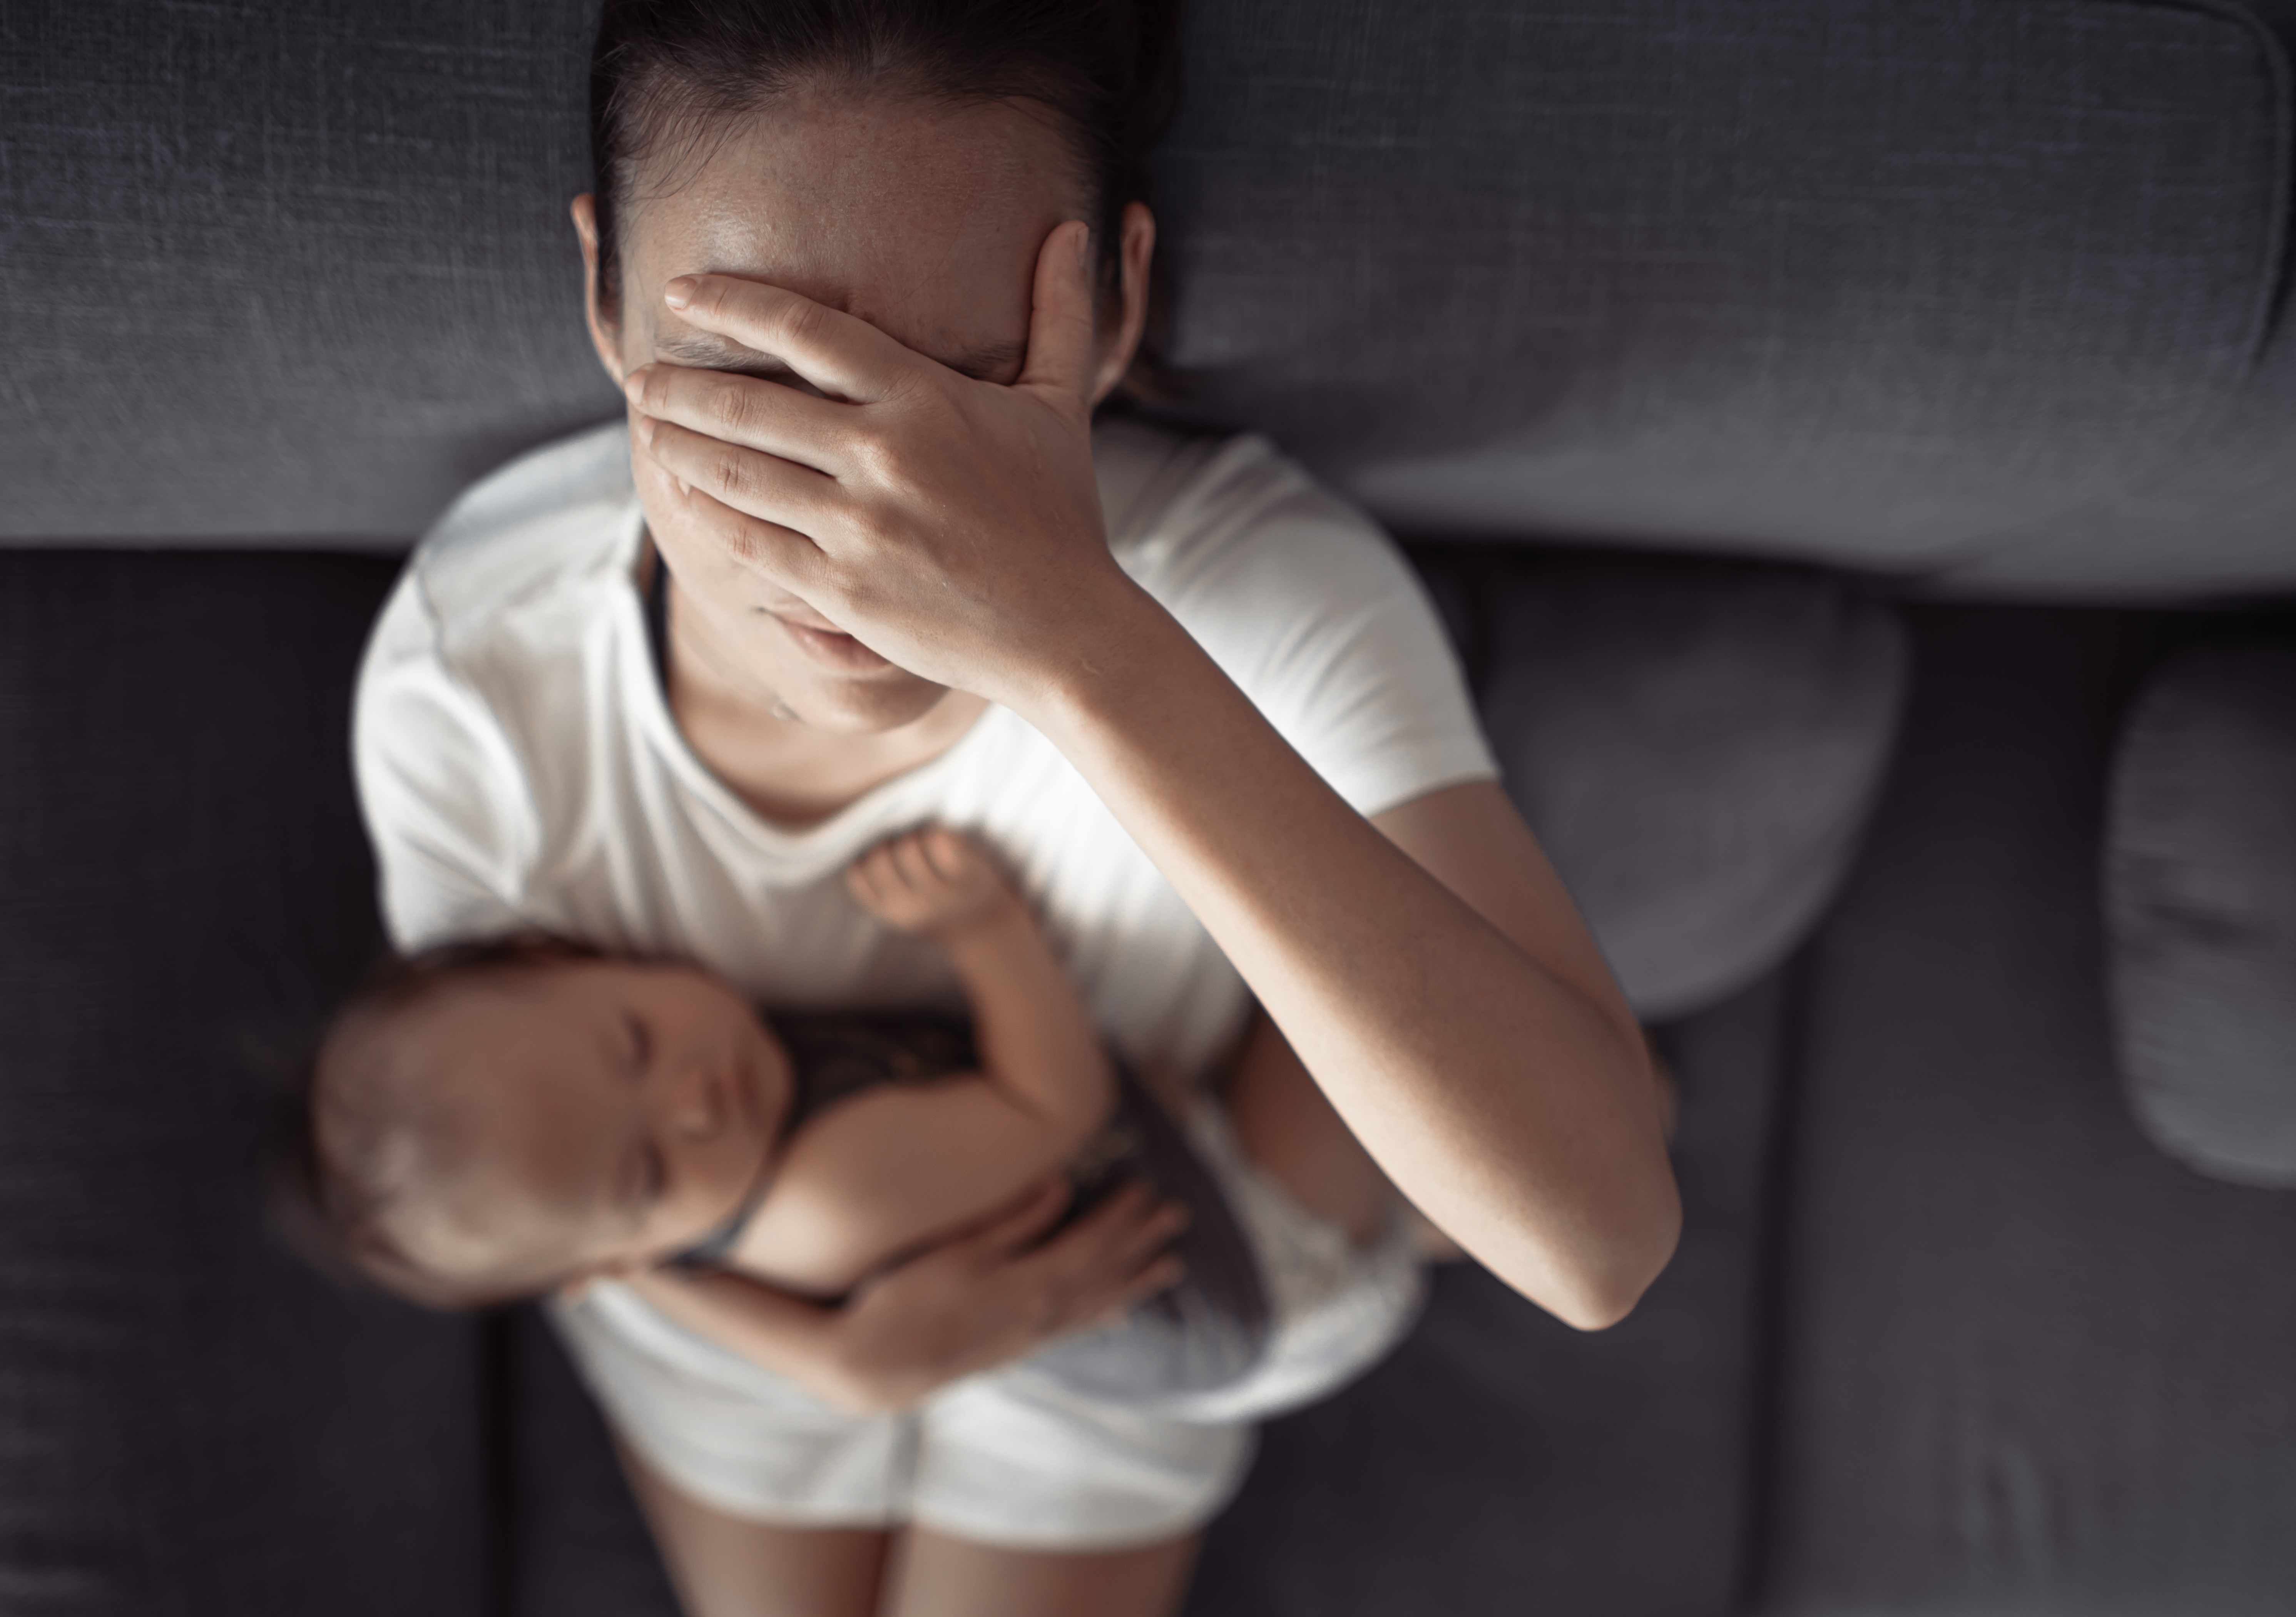 Une femme tenant un bébé tout en se couvrant le visage | Source : Shutterstock